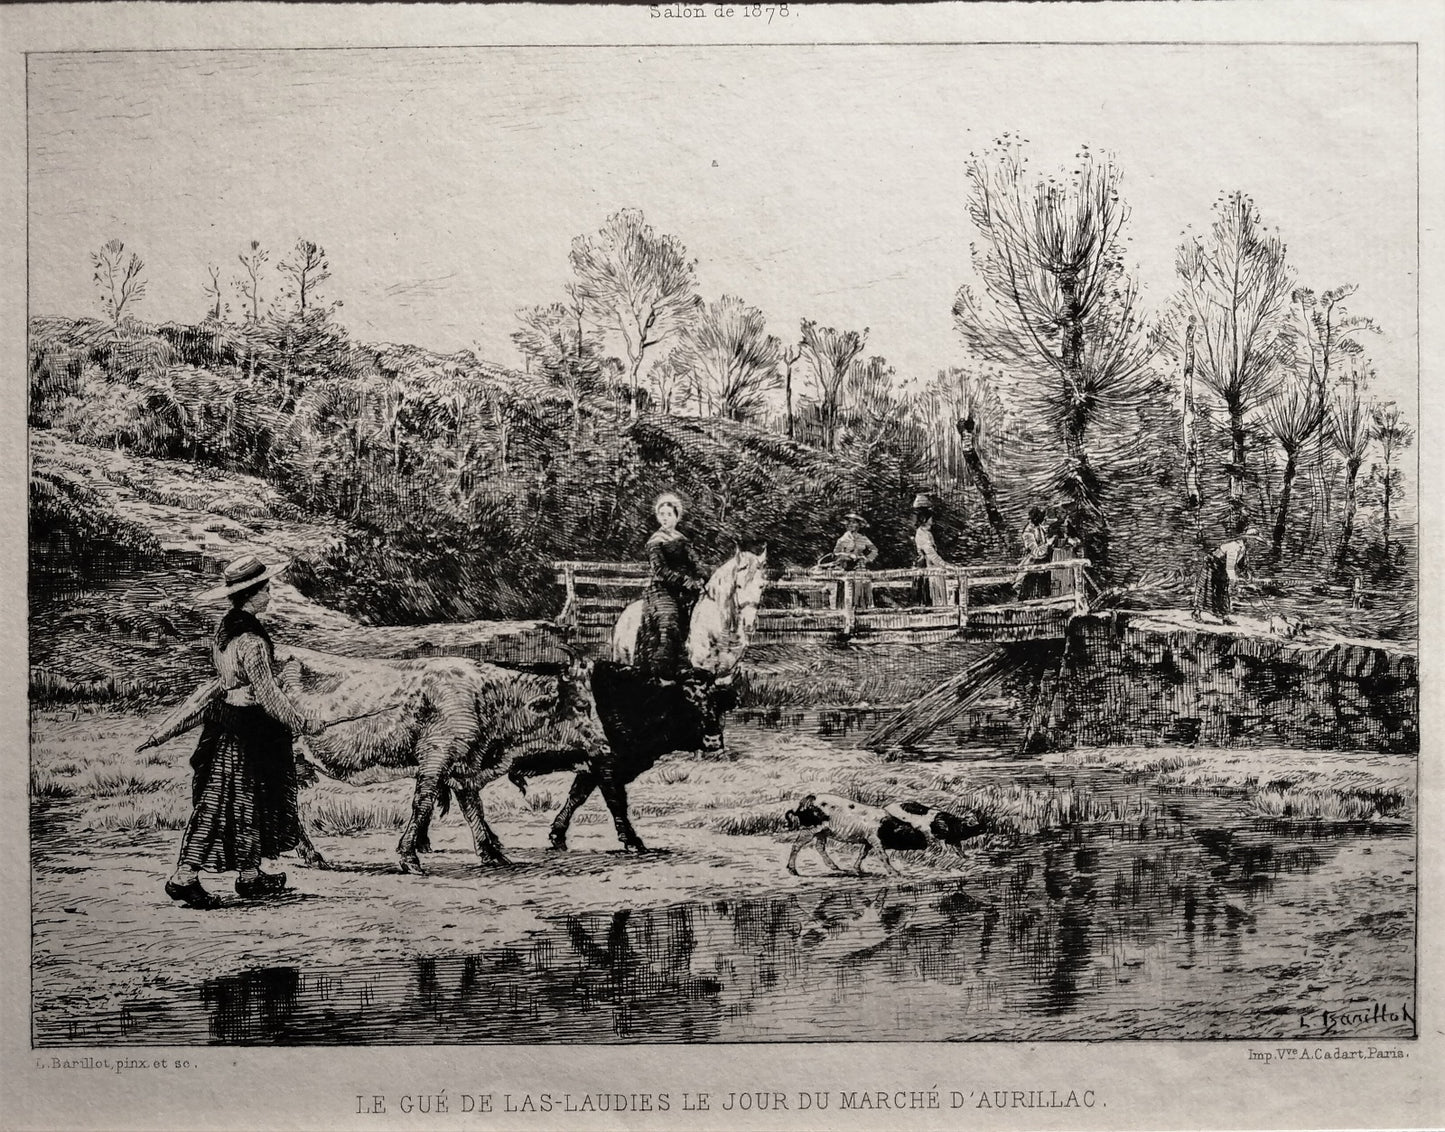 Barillot Le Gué de Las-Laudie le jour du marché d'Aurillac (1878)